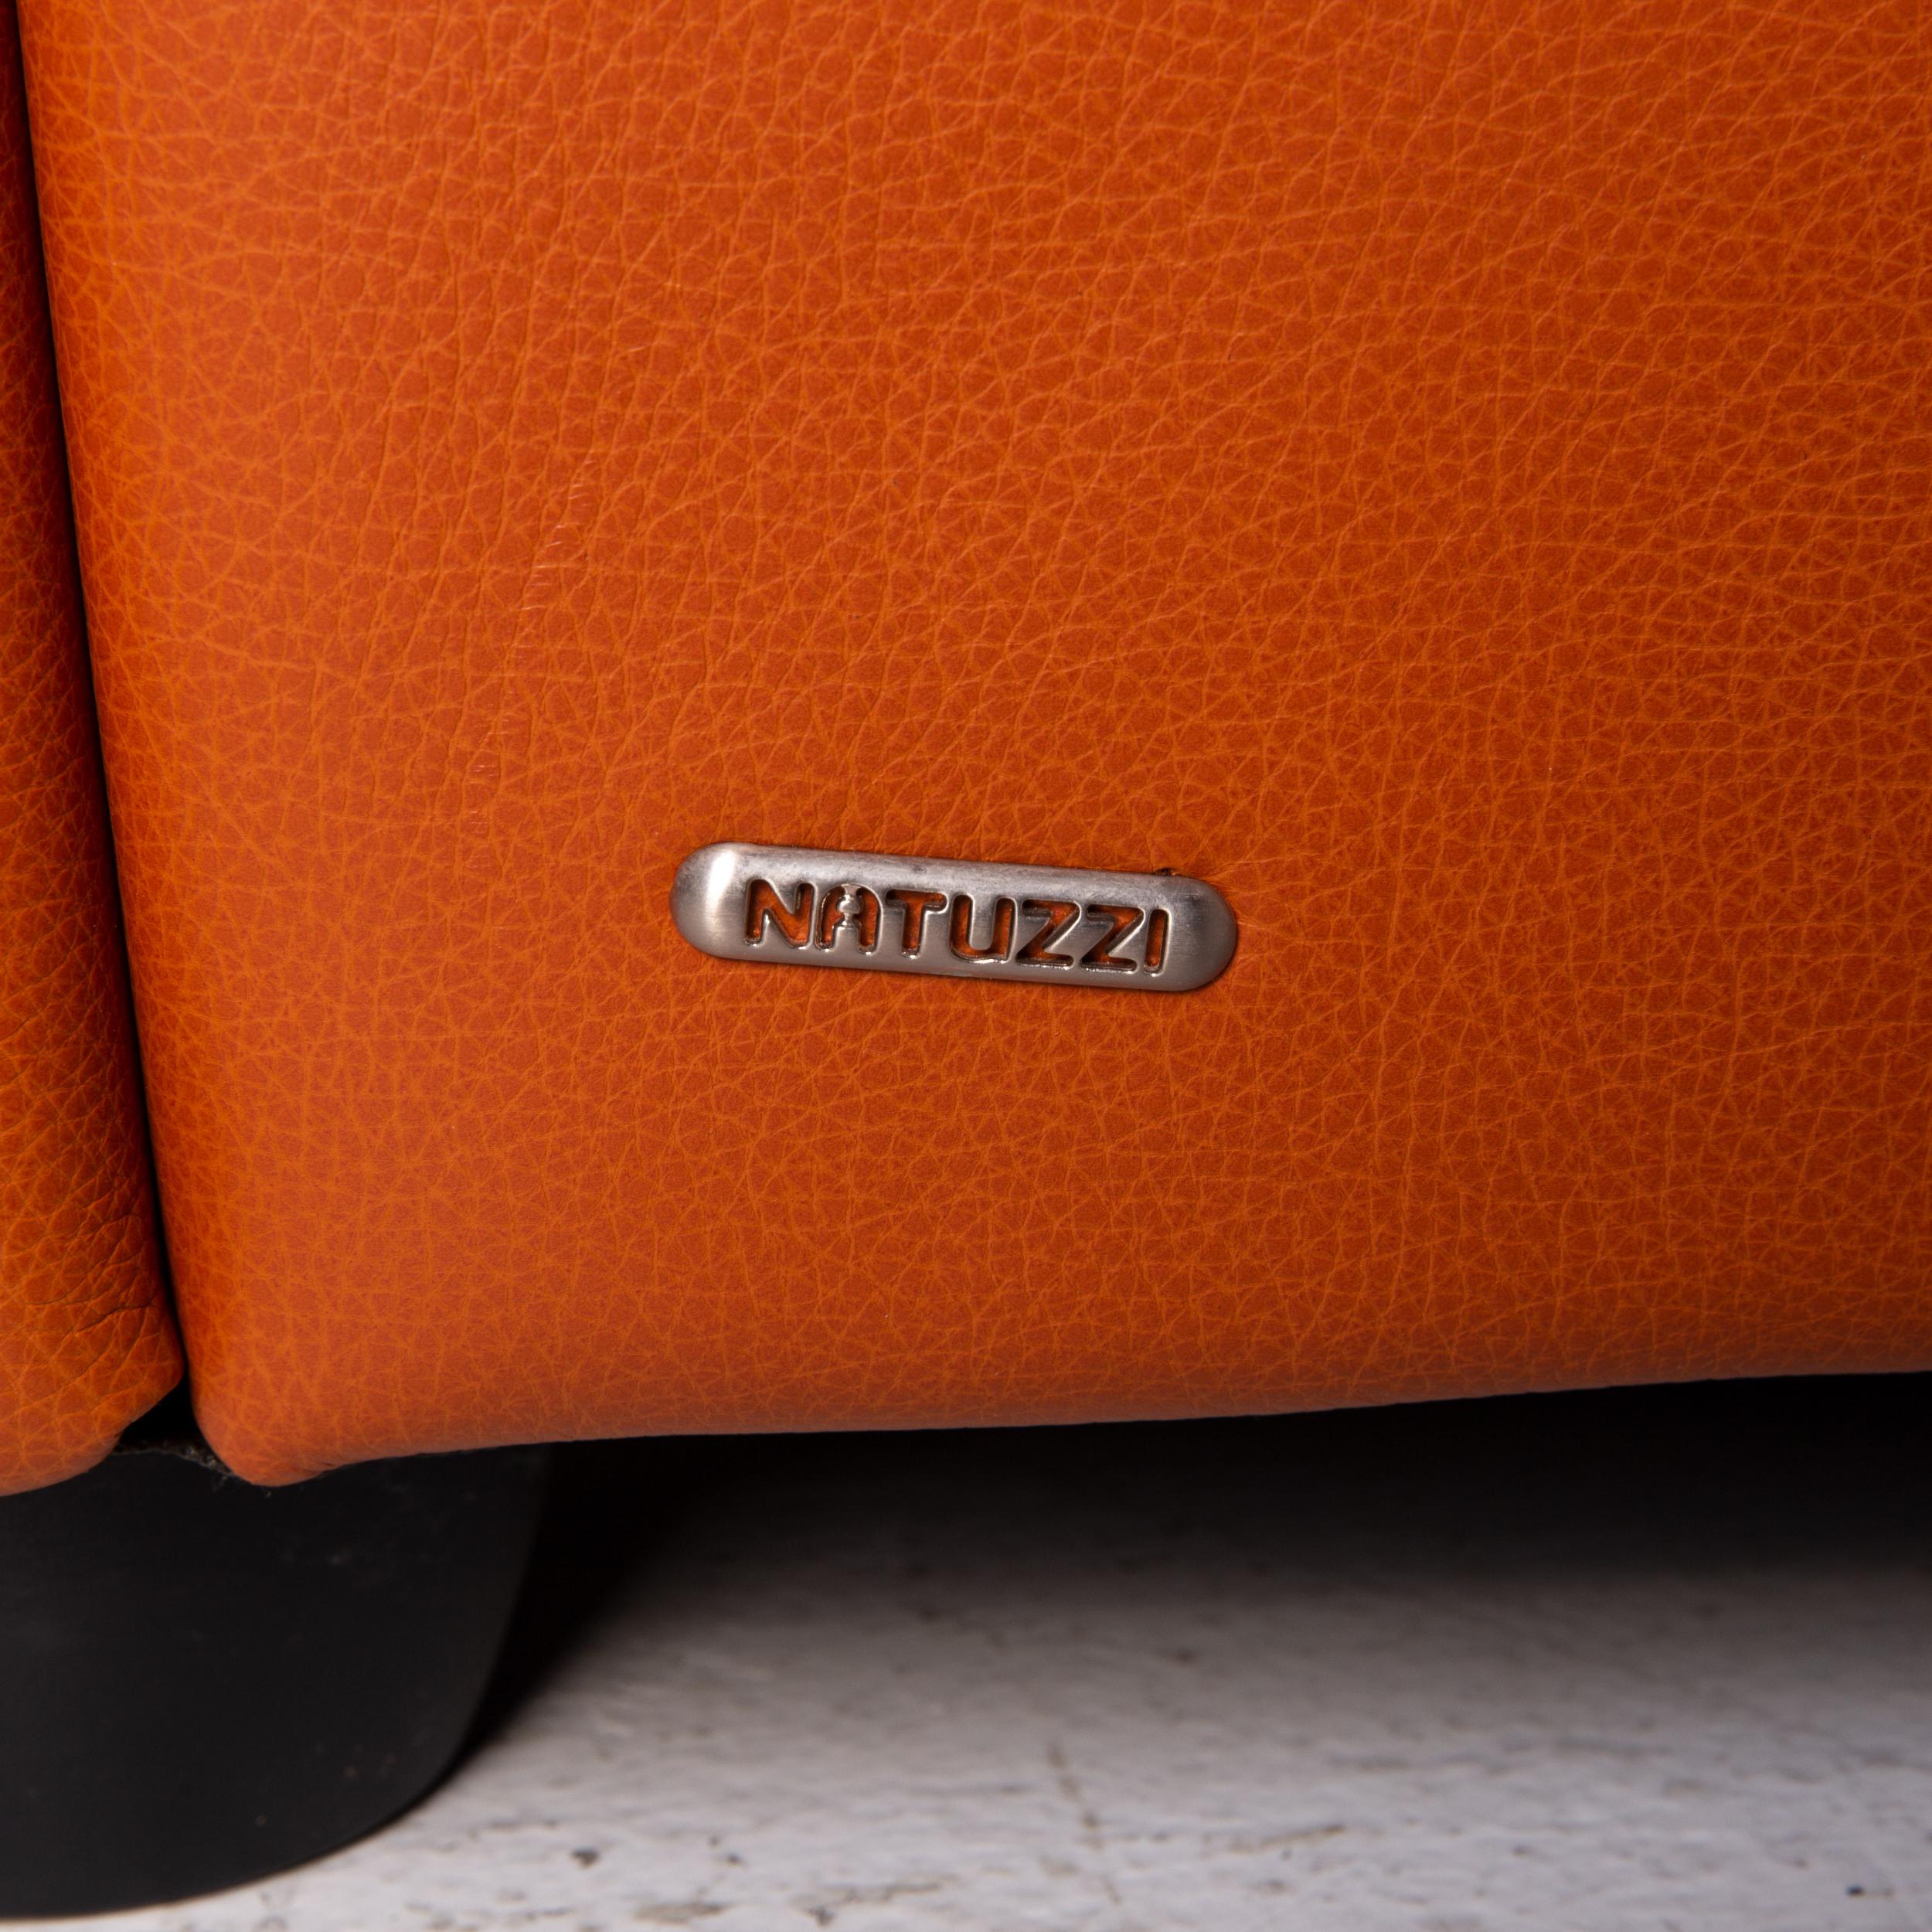 Natuzzi Leather Corner Sofa Terracotta Orange Sofa Couch In Good Condition For Sale In Cologne, DE